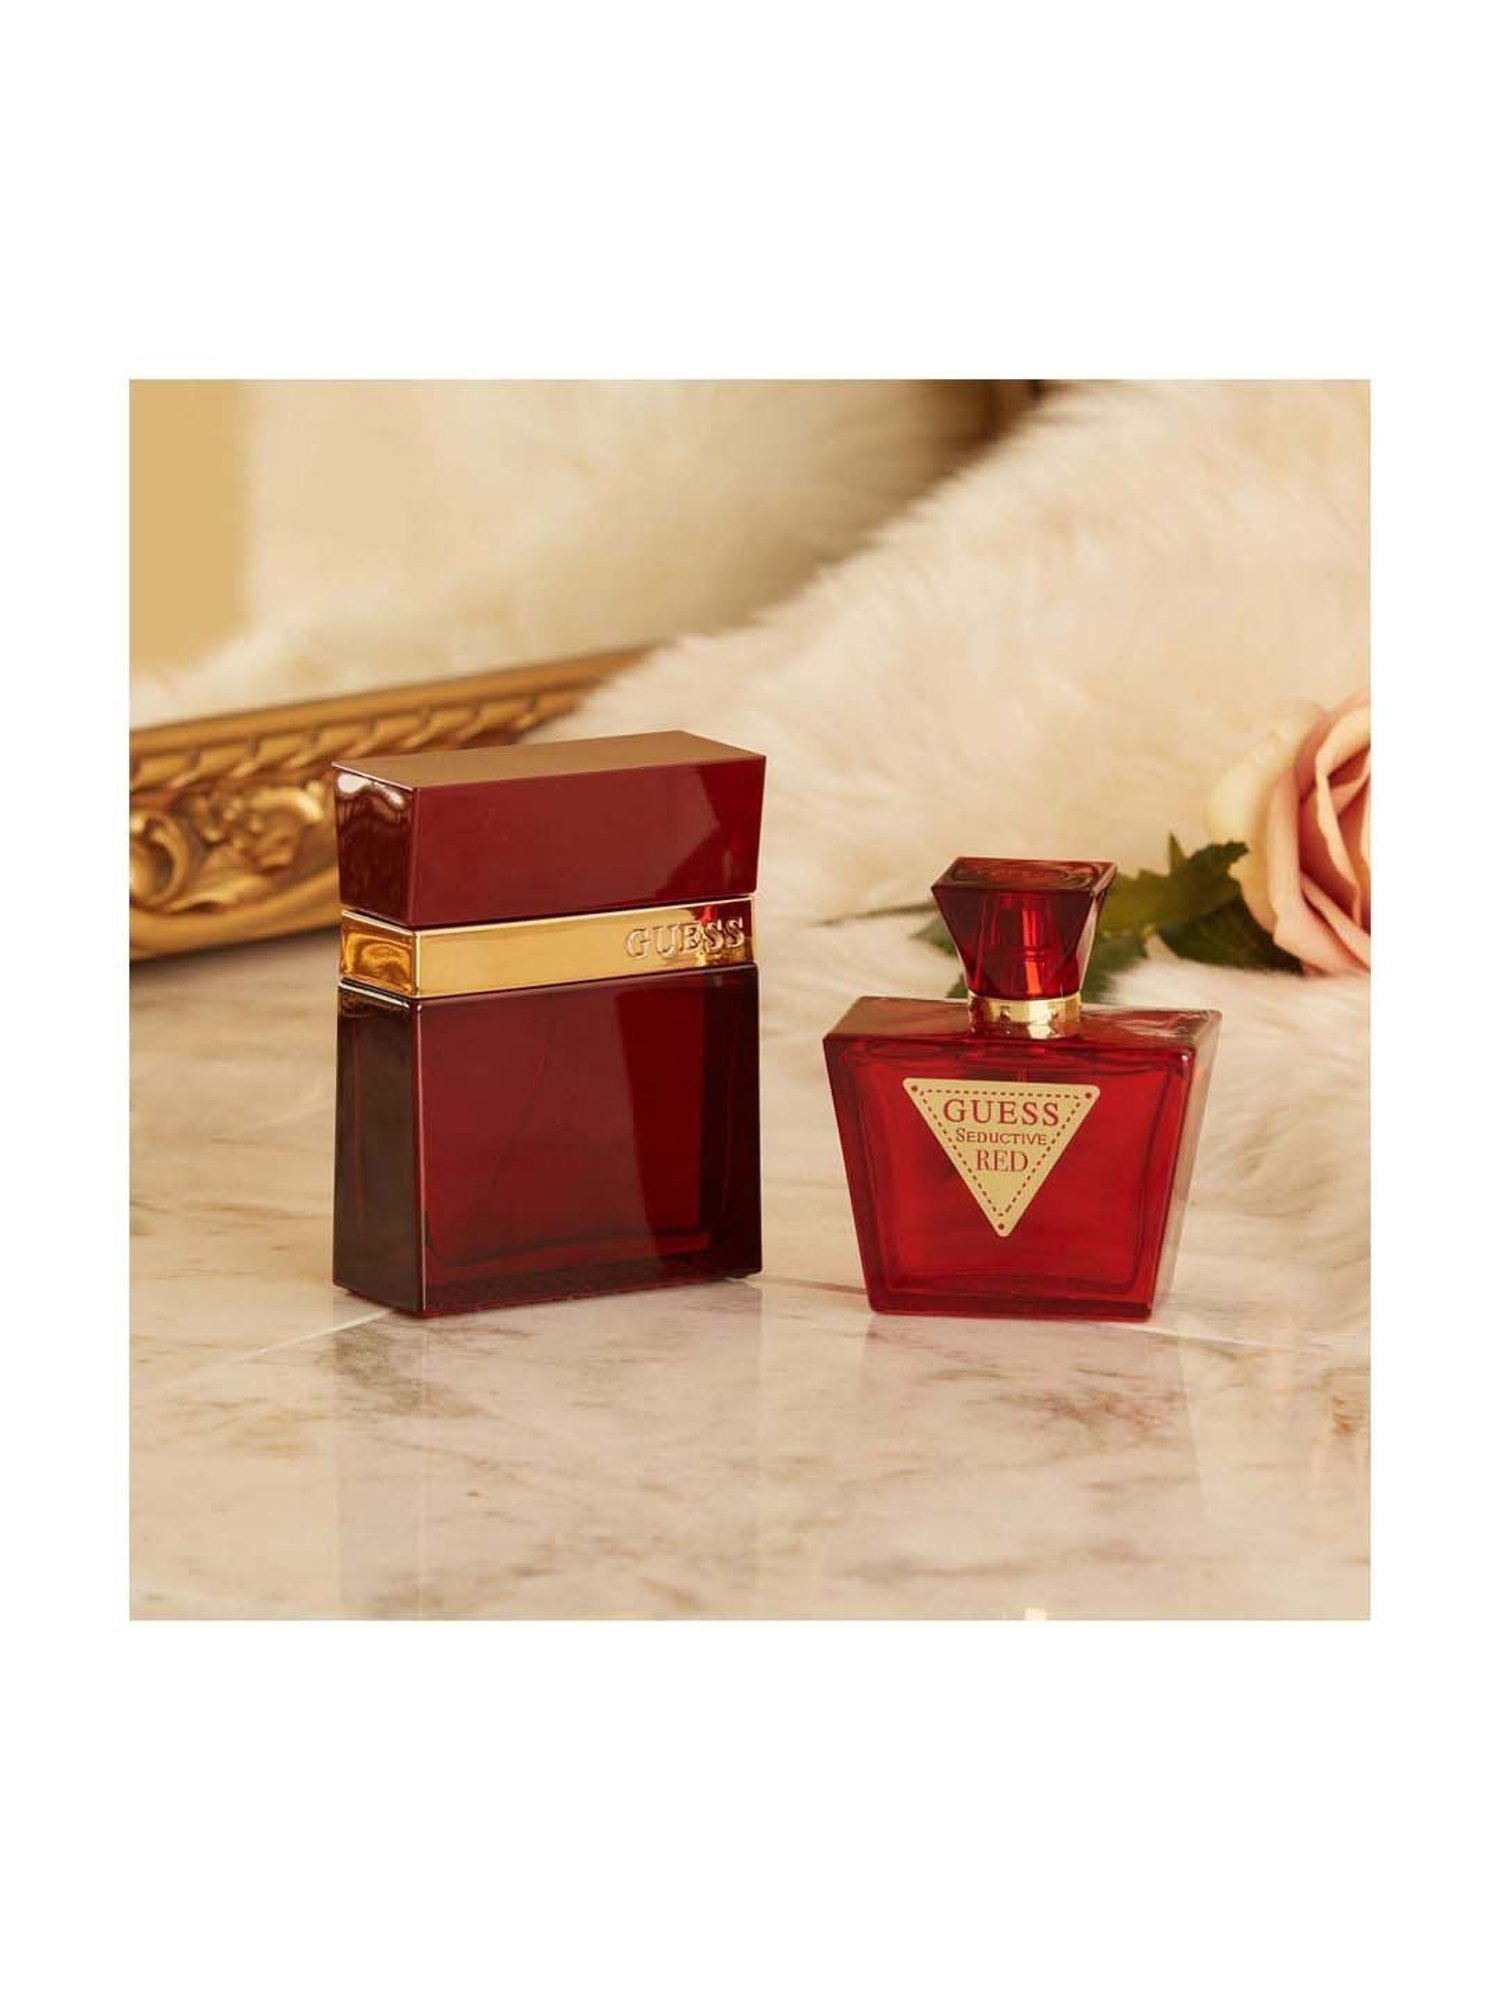 Guess Seductive Red Eau de Toilette Gift Set with Pouch – Perfume